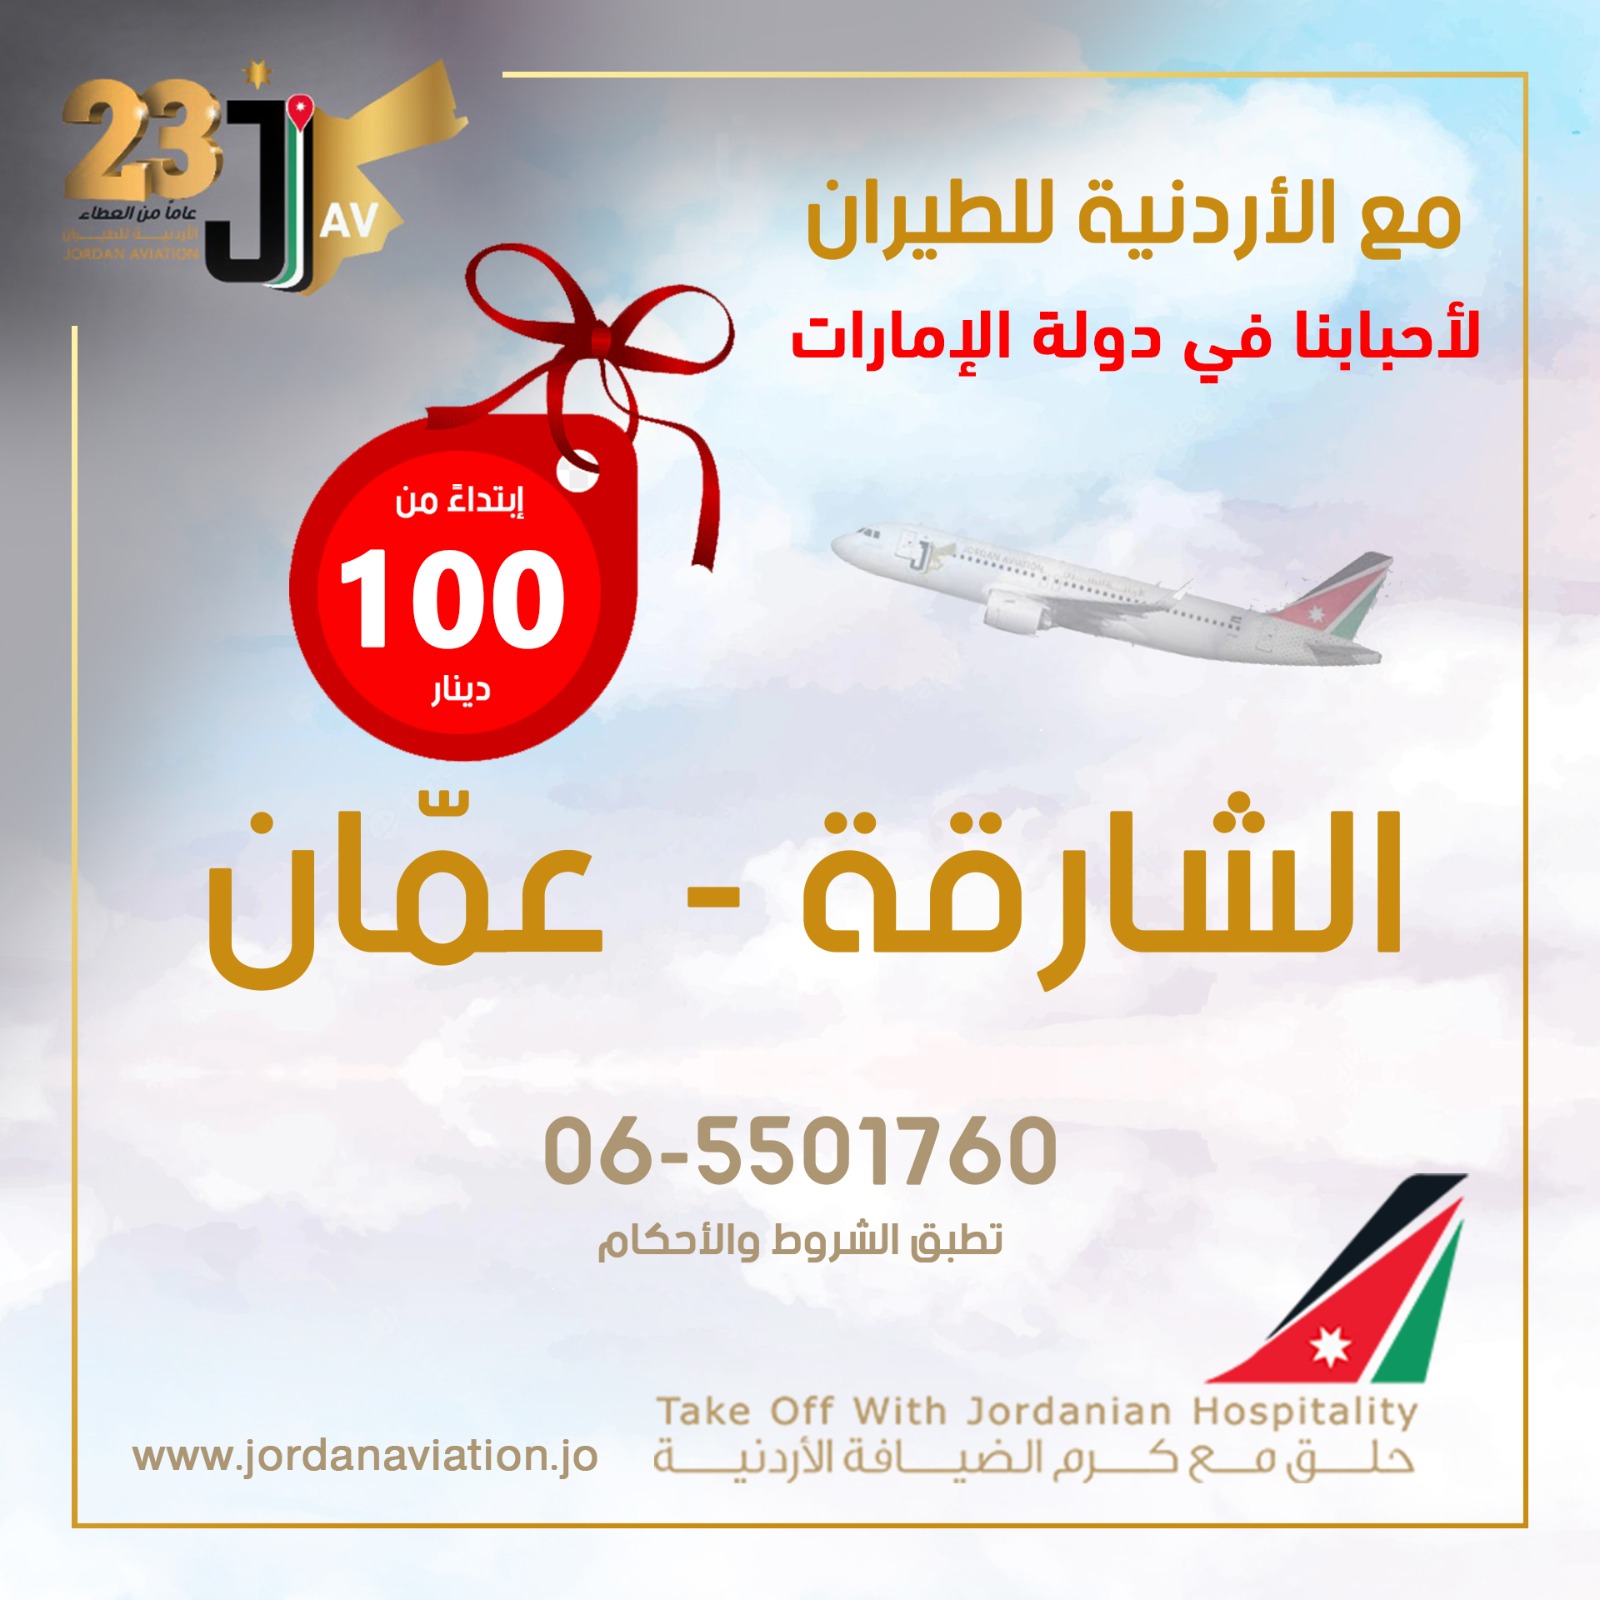 الأردنية للطيران تعلن عن عرض مغري للقادمين من الشارقة إلى عمّان على متن طائراتها